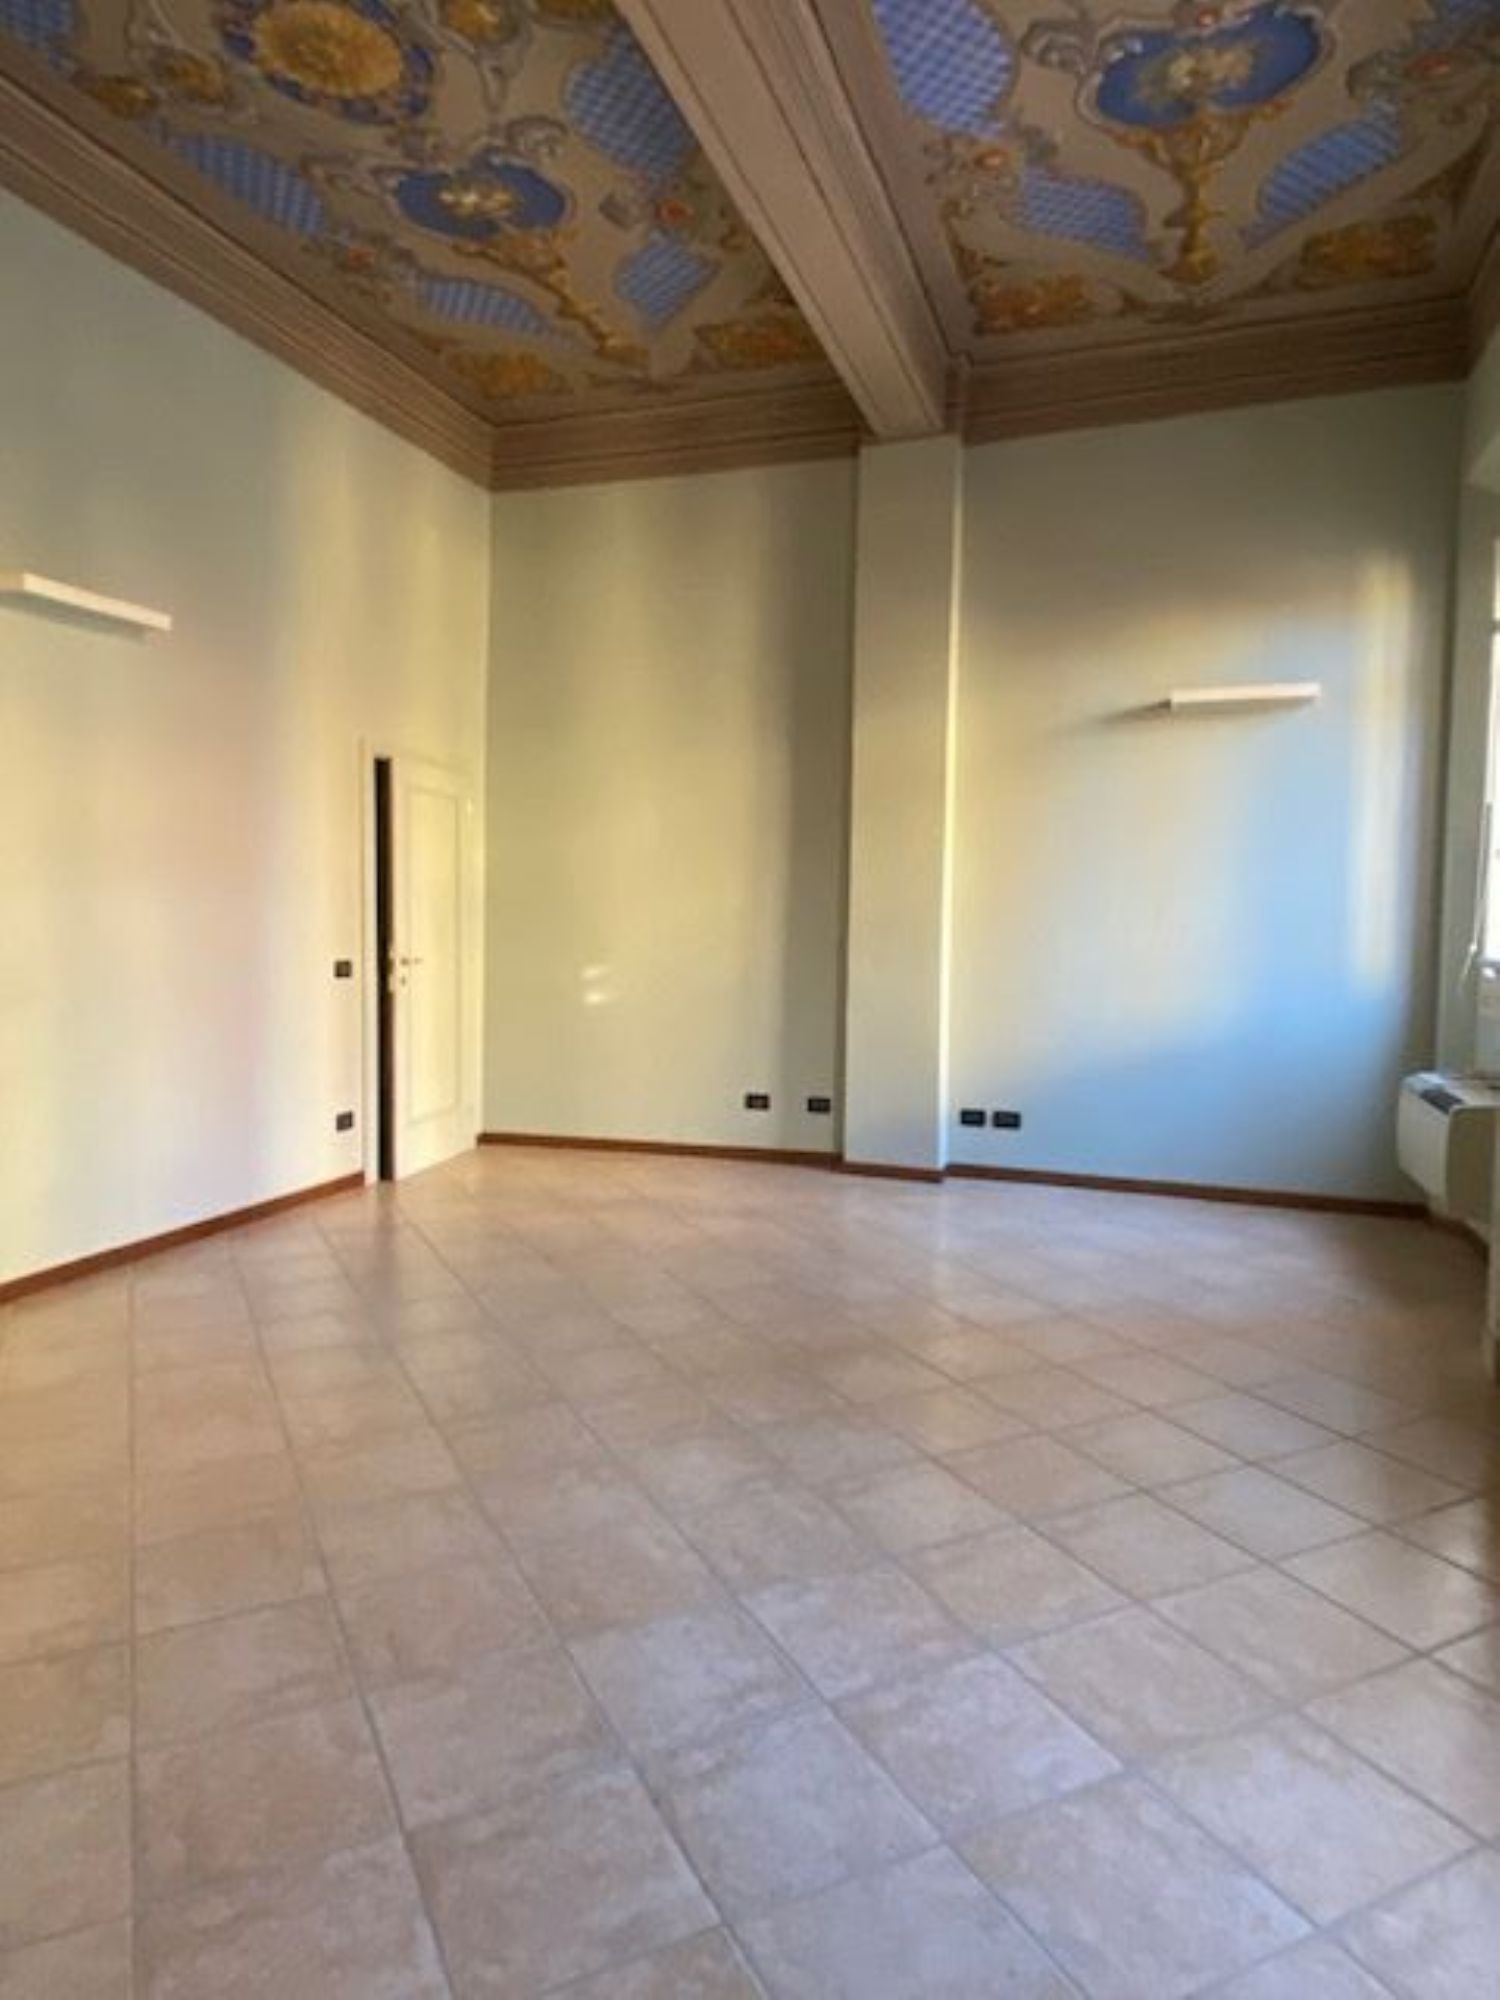 Ufficio / Studio in affitto a San Giovanni in Persiceto, 9999 locali, prezzo € 440 | PortaleAgenzieImmobiliari.it